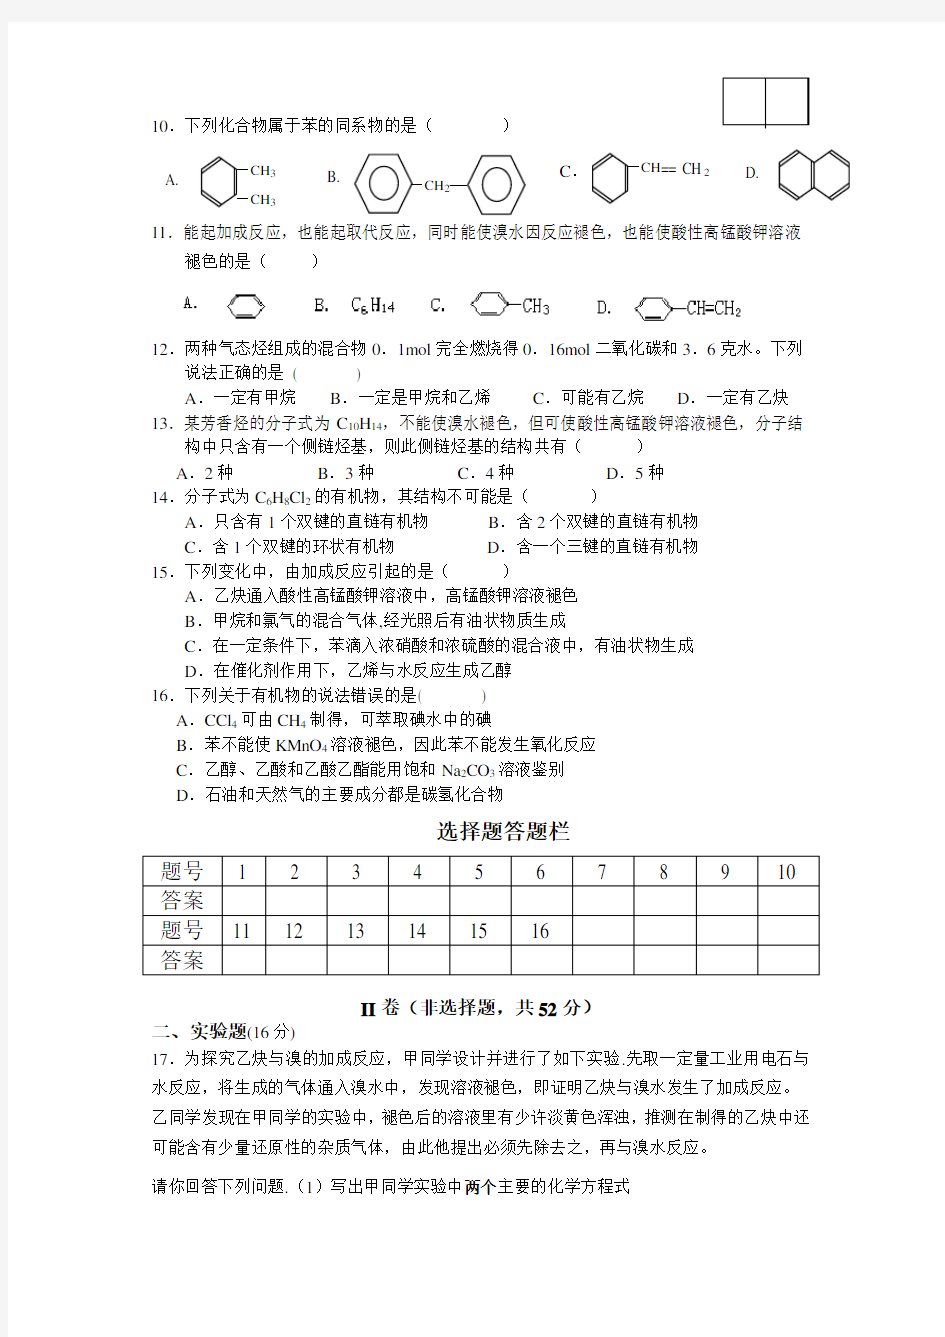 安徽省合肥一中高二第一学期阶段一考试(化学)